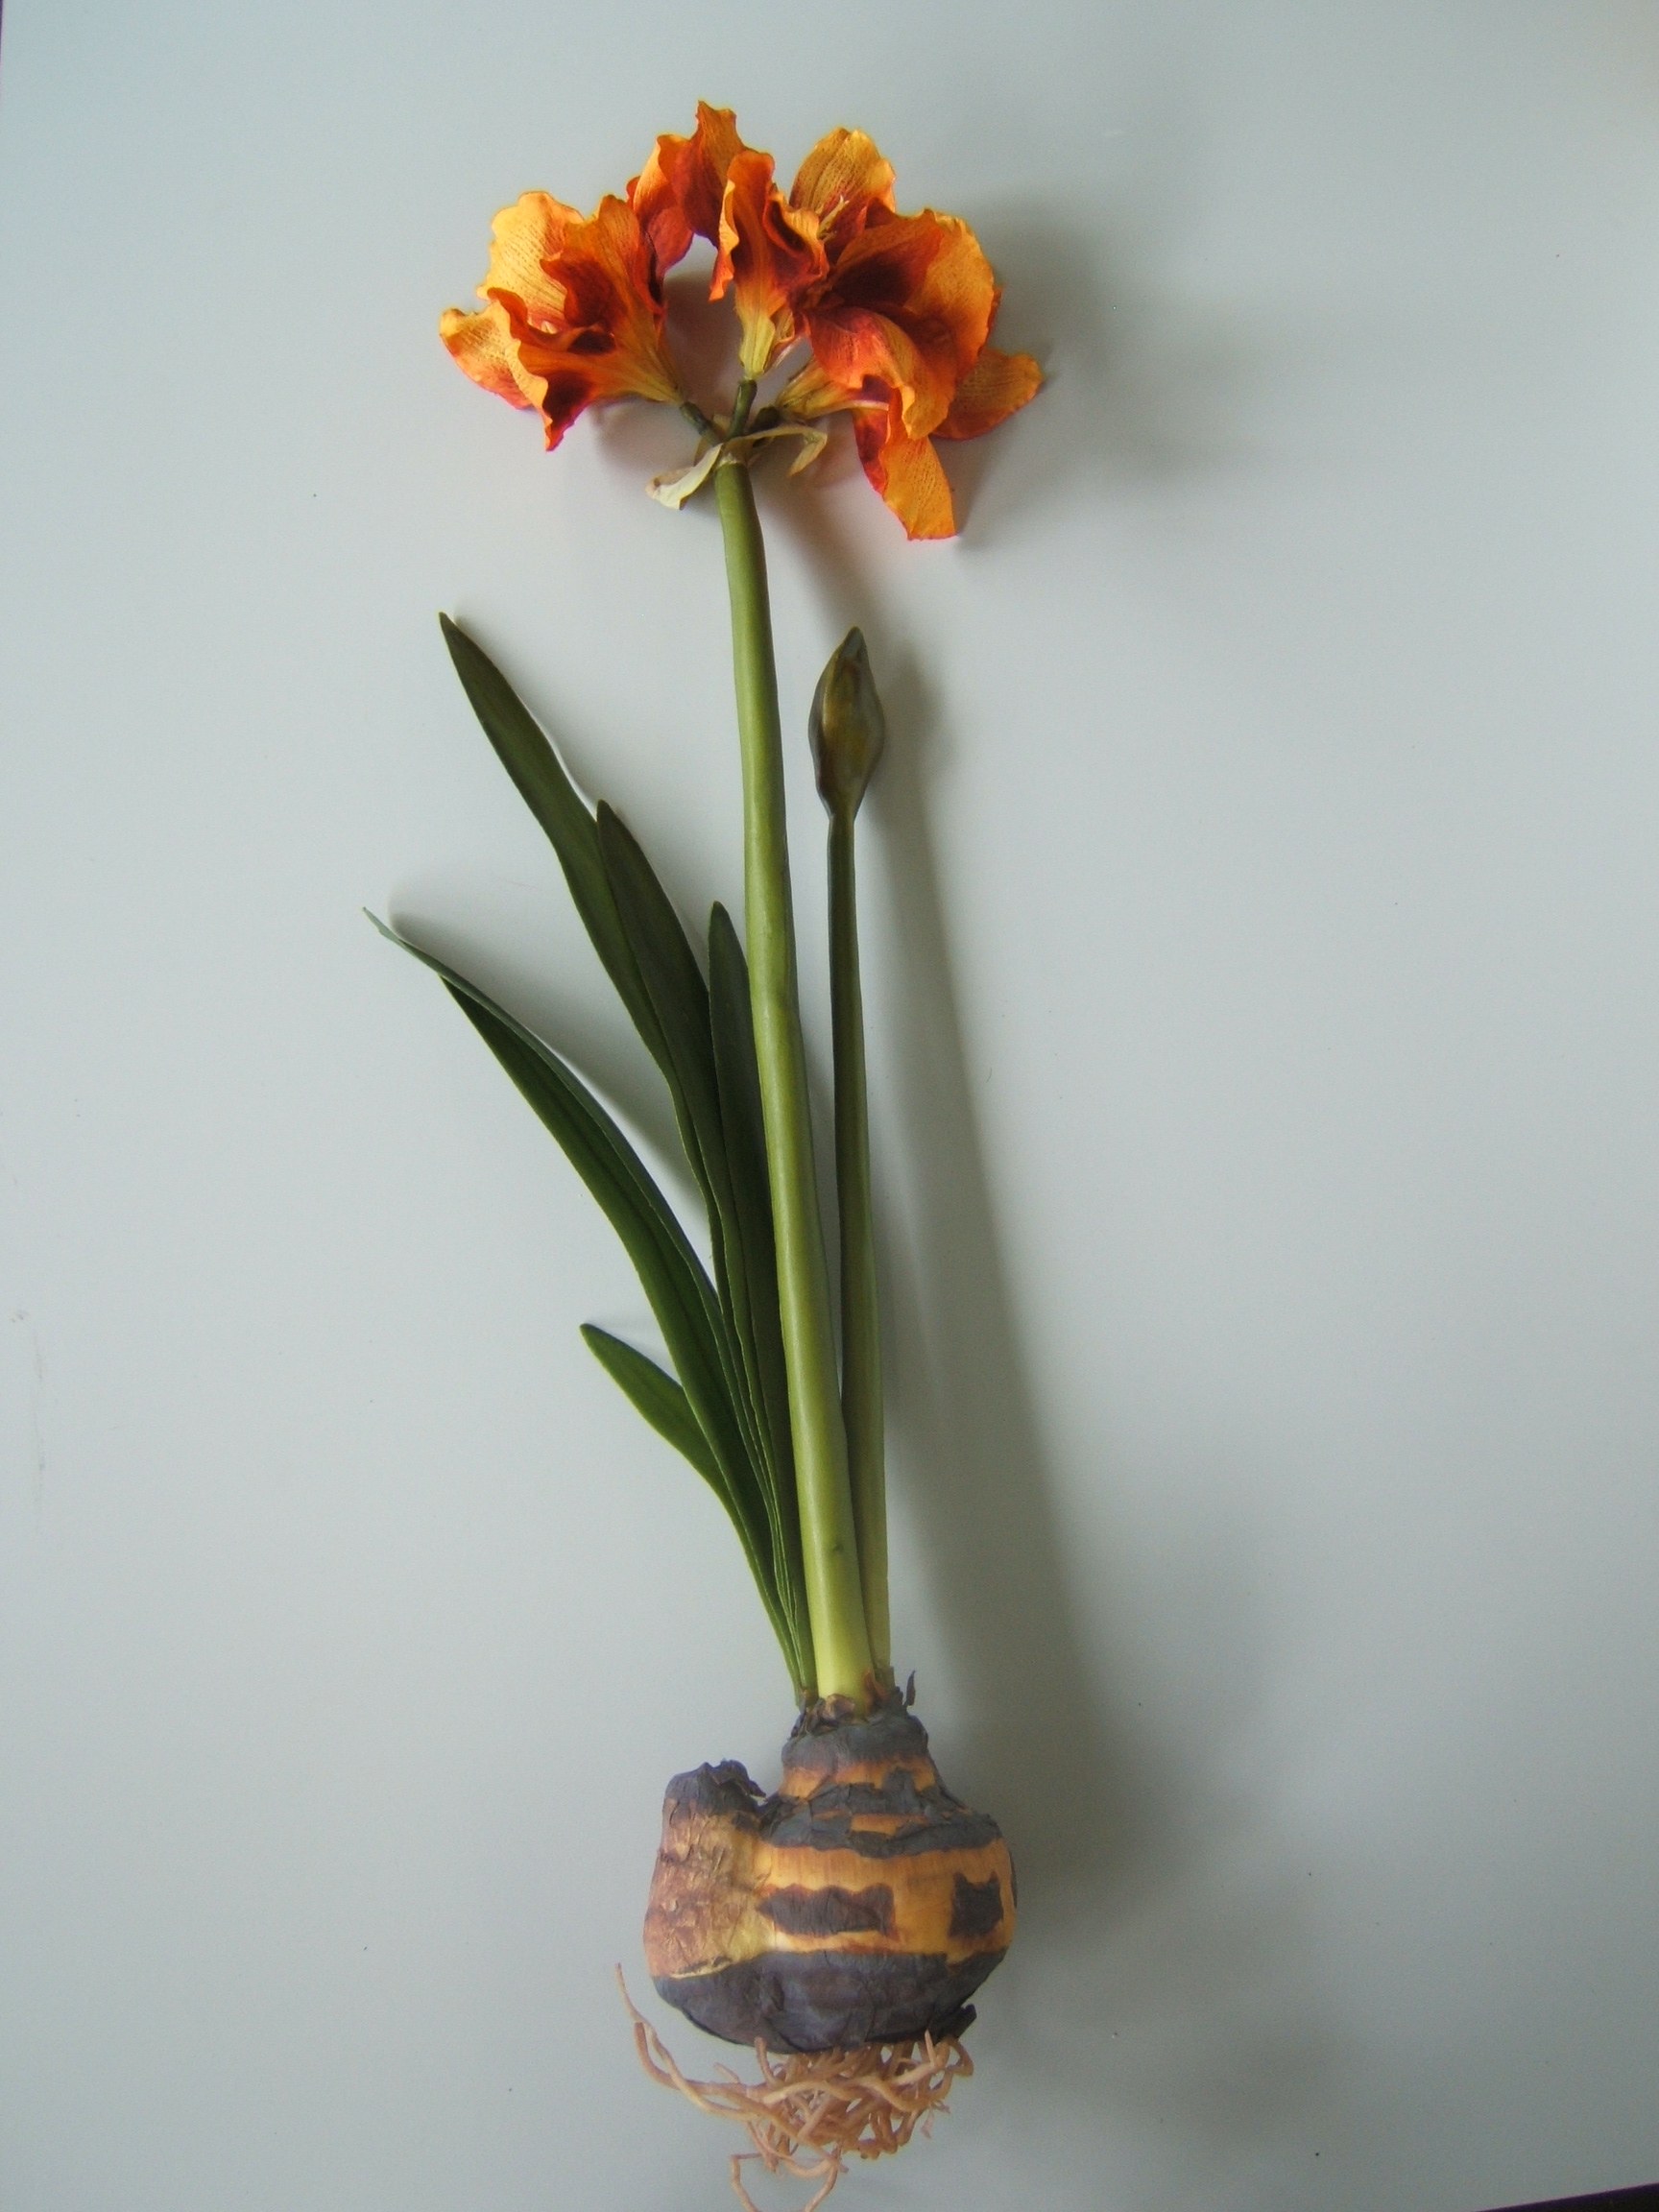 Amaryllis Gigant mit 3 Blüten, 1 Knospe, 6 Blättern, 1 Zwiebel u. Luftwurzeln Farbe:orange-gelb-rot